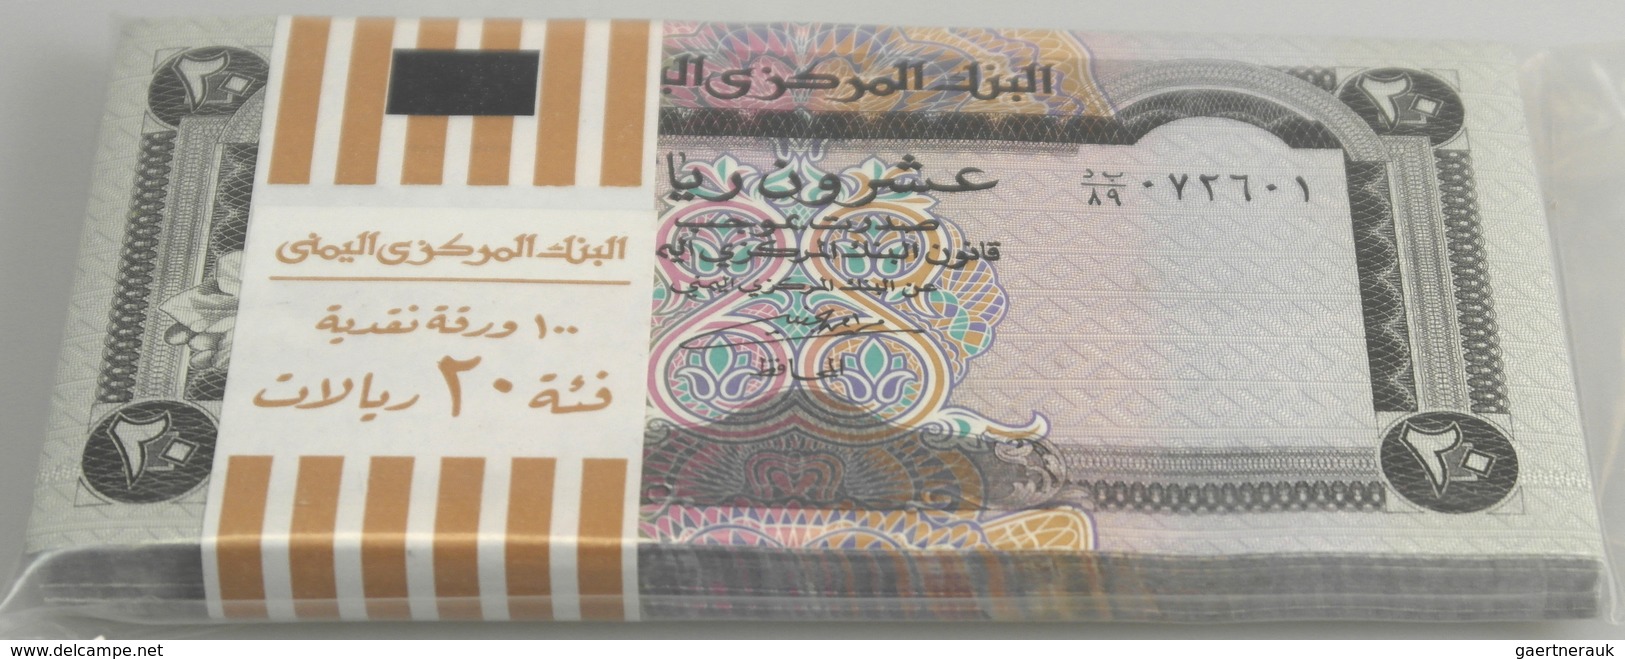 Yemen / Jemen: Original Bundle Of 100 Banknotes 20 Rials ND P. 26 In Condition: UNC. - Yemen